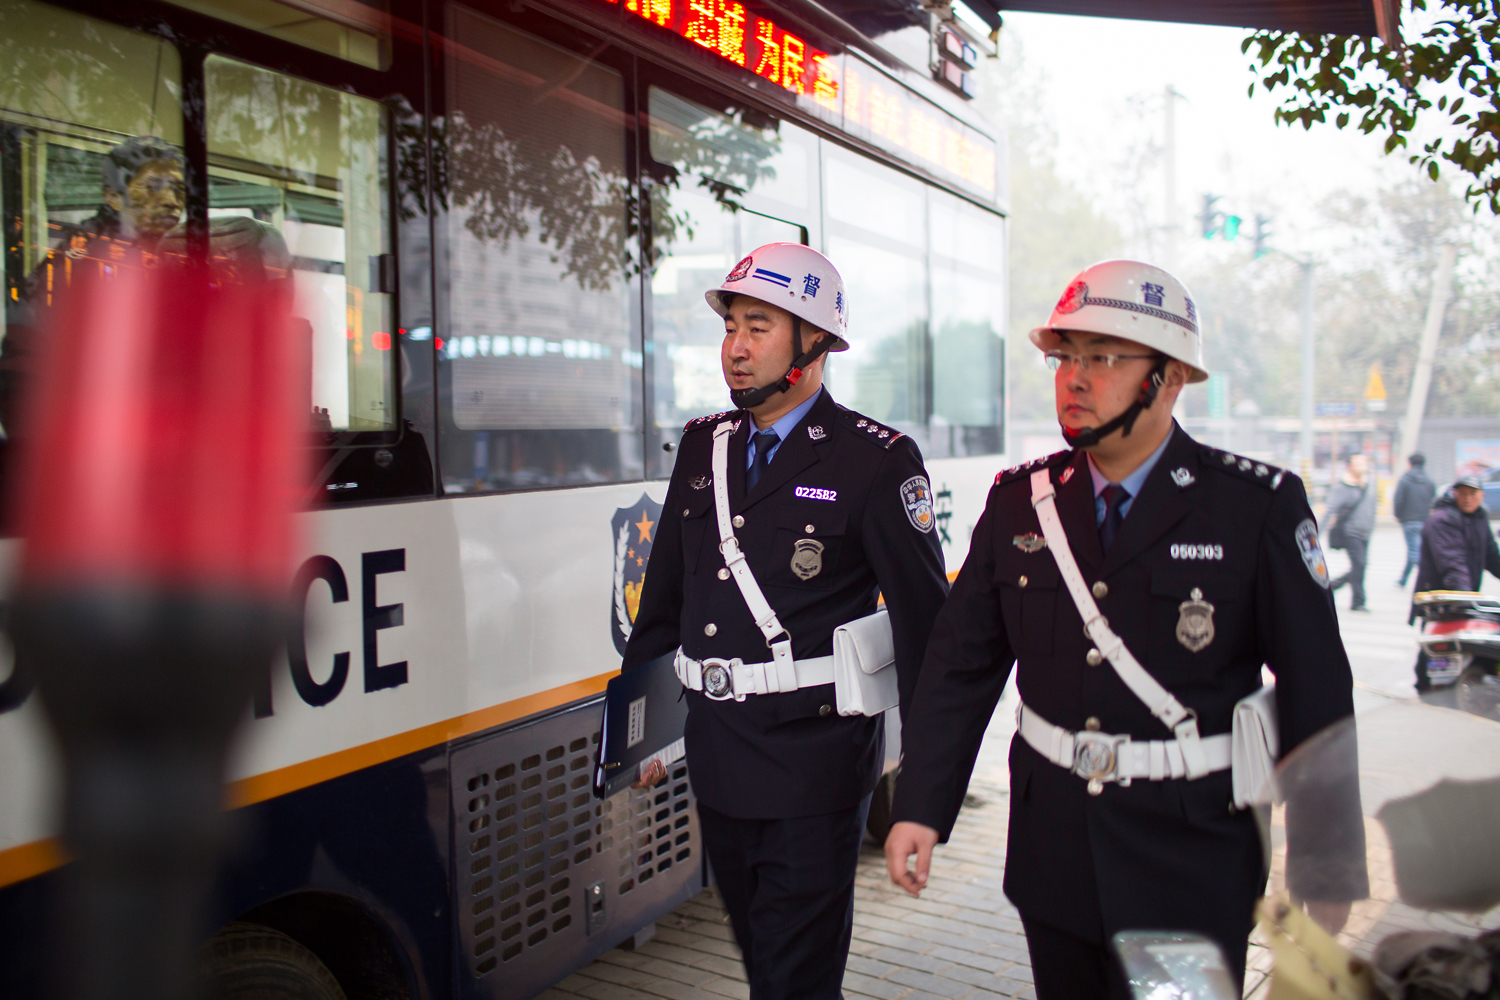 北京市公安局警服、特警服装项目 - 典型案例 - 北京汇诚金桥国际招标咨询有限公司